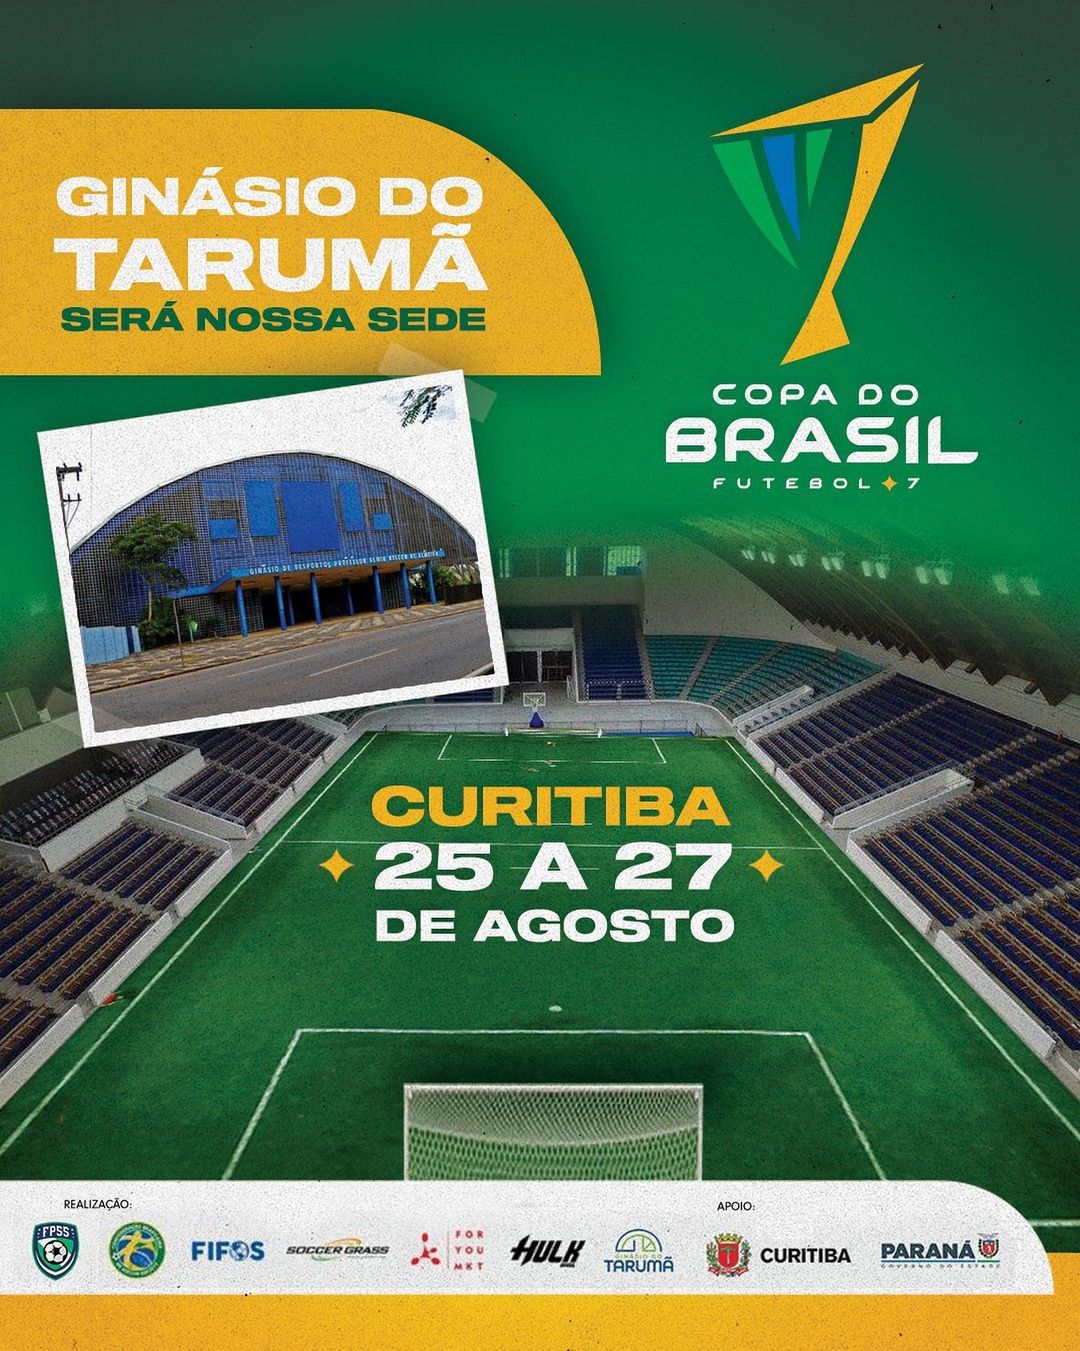 copa brasil futebol 7